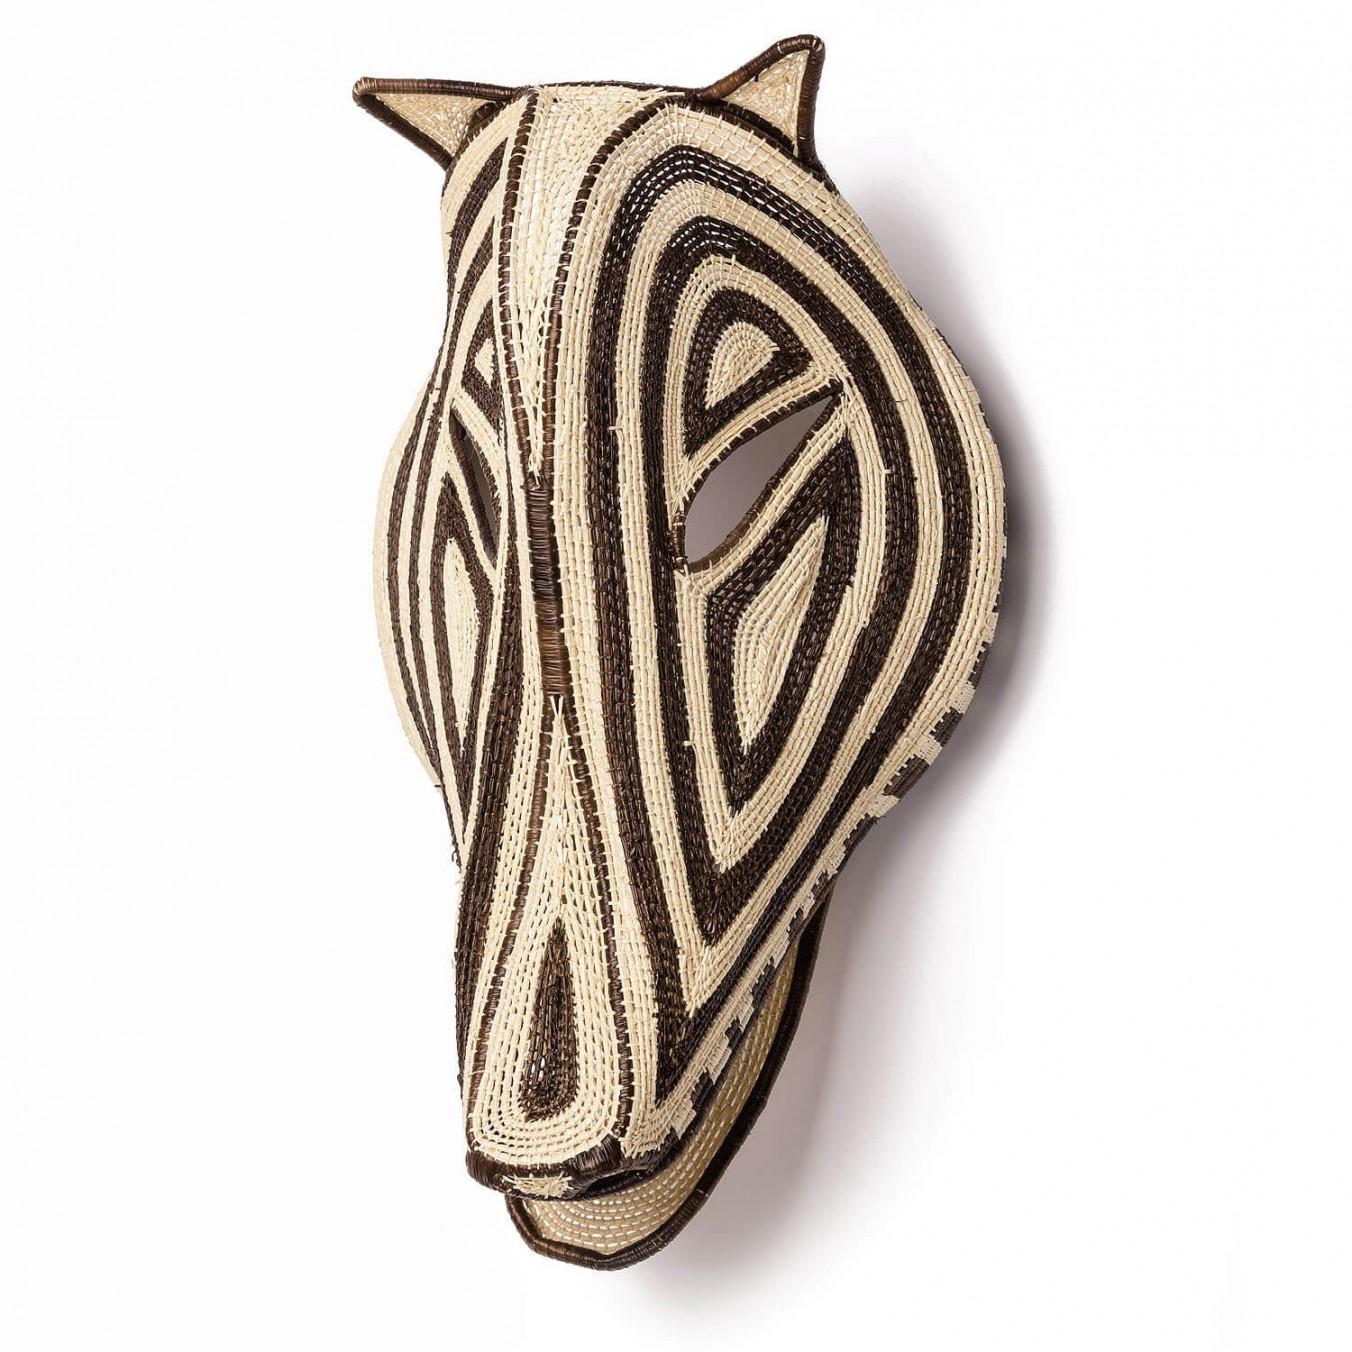 Dekorative handgewebte Maske aus Panama, Nemboro von Ethic&Tropic

Diese außergewöhnlichen Kunst- und Dekorationsgegenstände stammen aus dem schamanischen Glauben und den Ritualen der indigenen Embera-Stämme in Panama. Durch die Schamanen kommen die